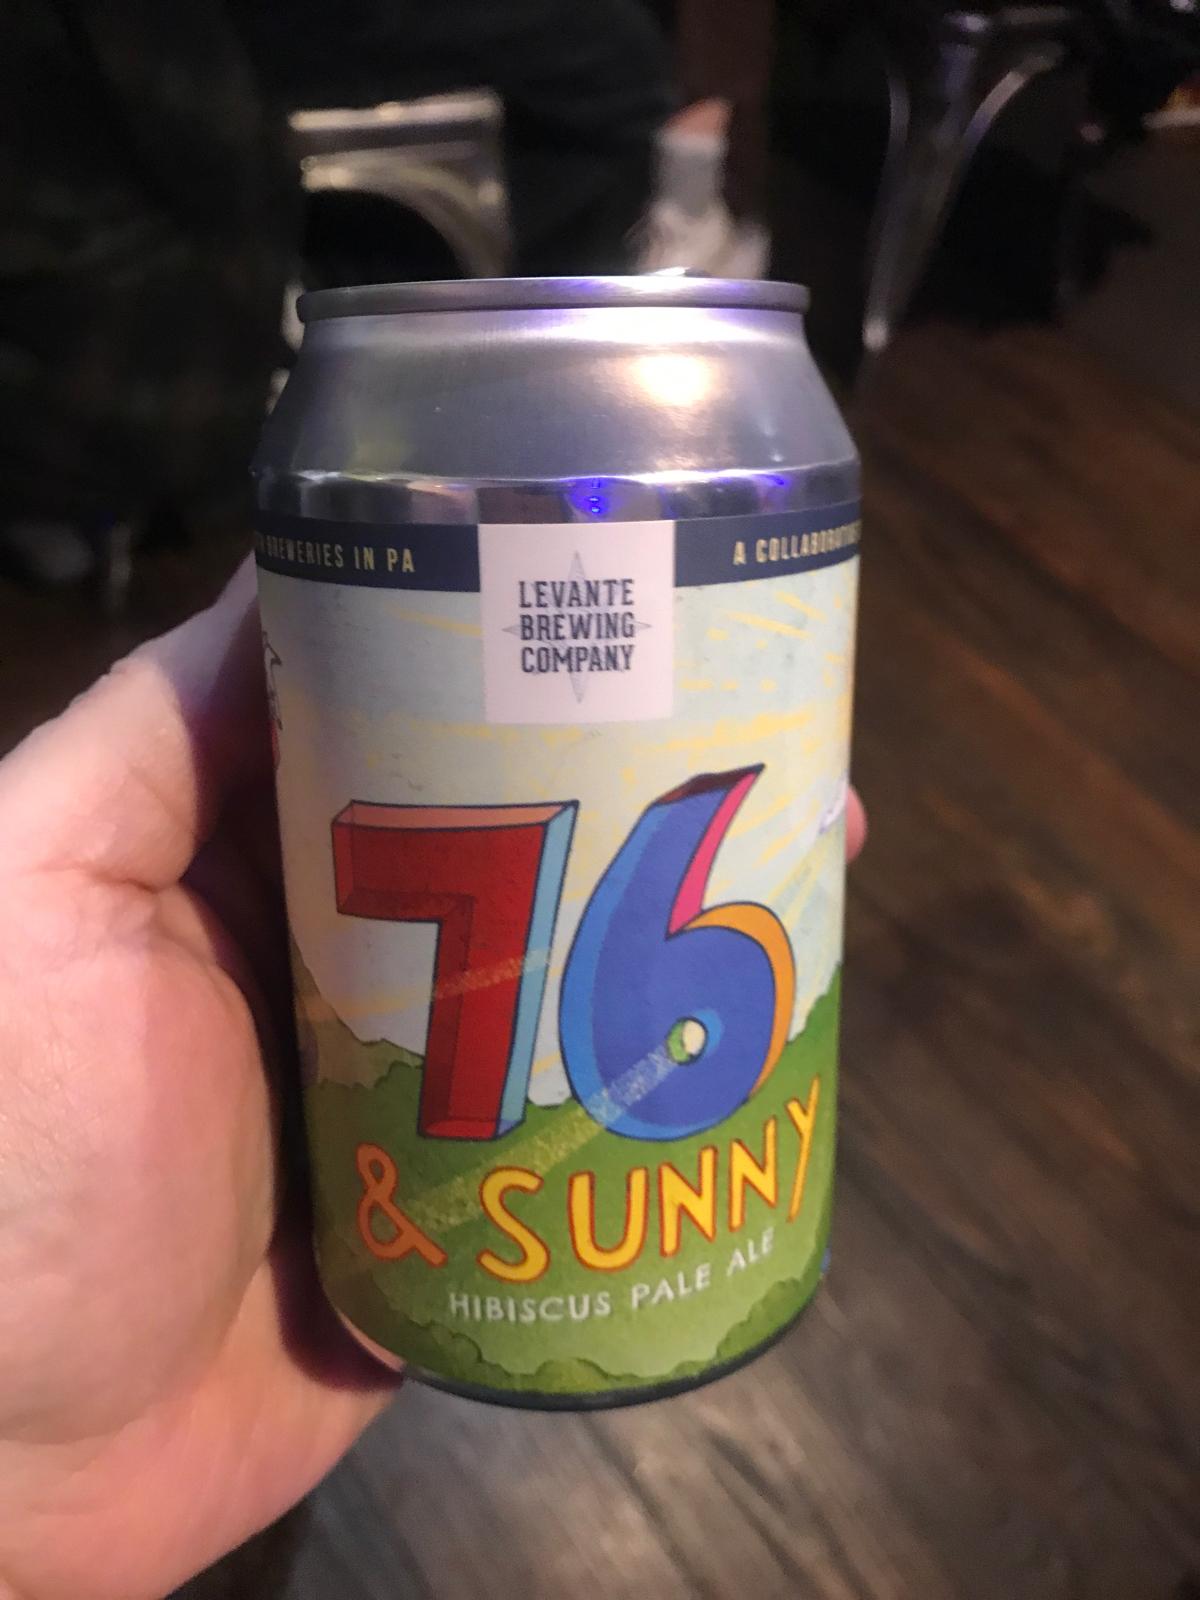 76 & Sunny